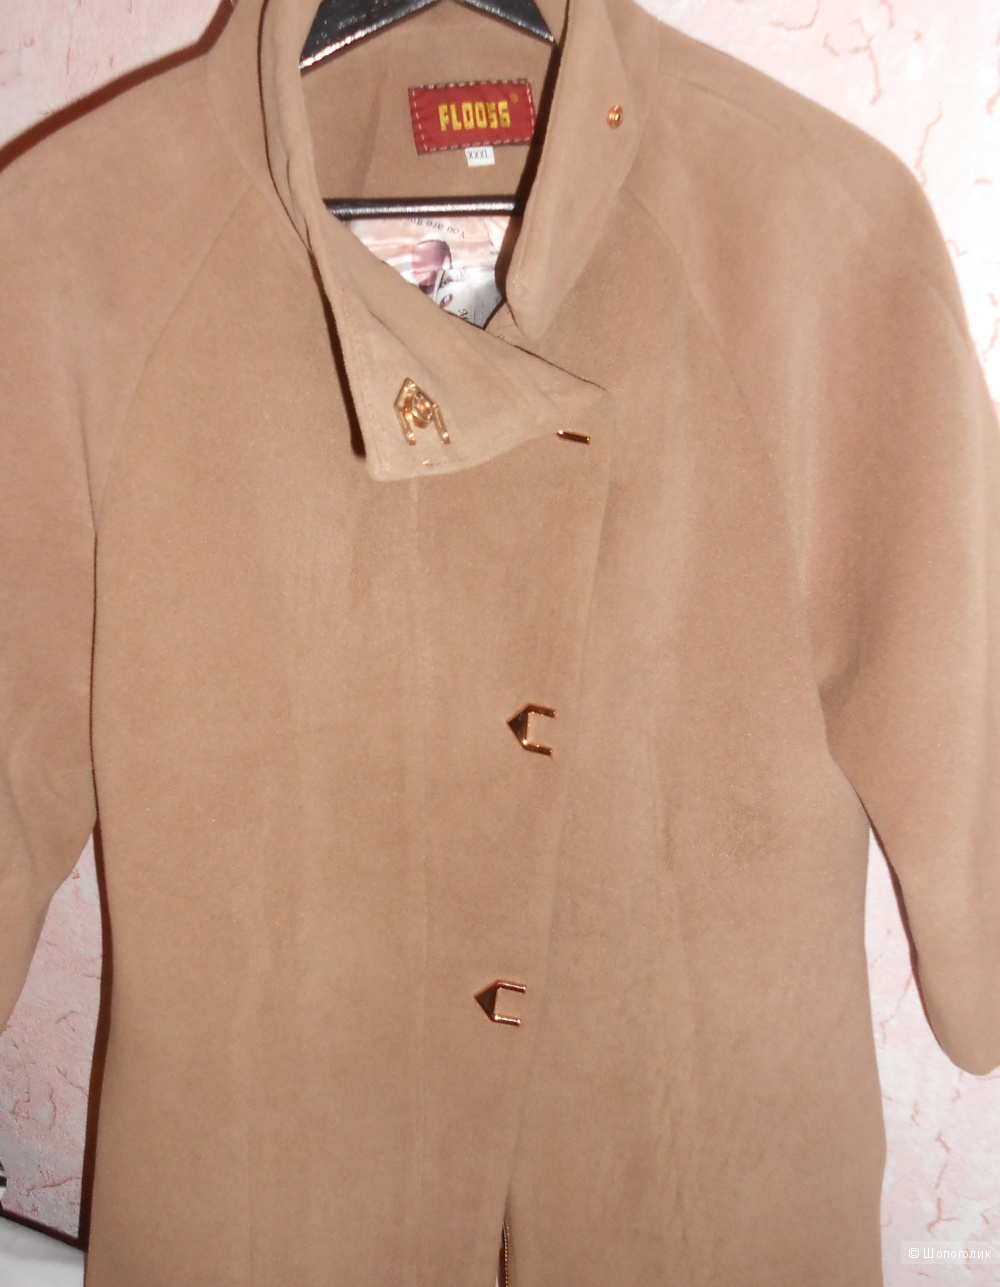 Пальто кашемировое фирма  Floo56  размер  44-46 (новое )